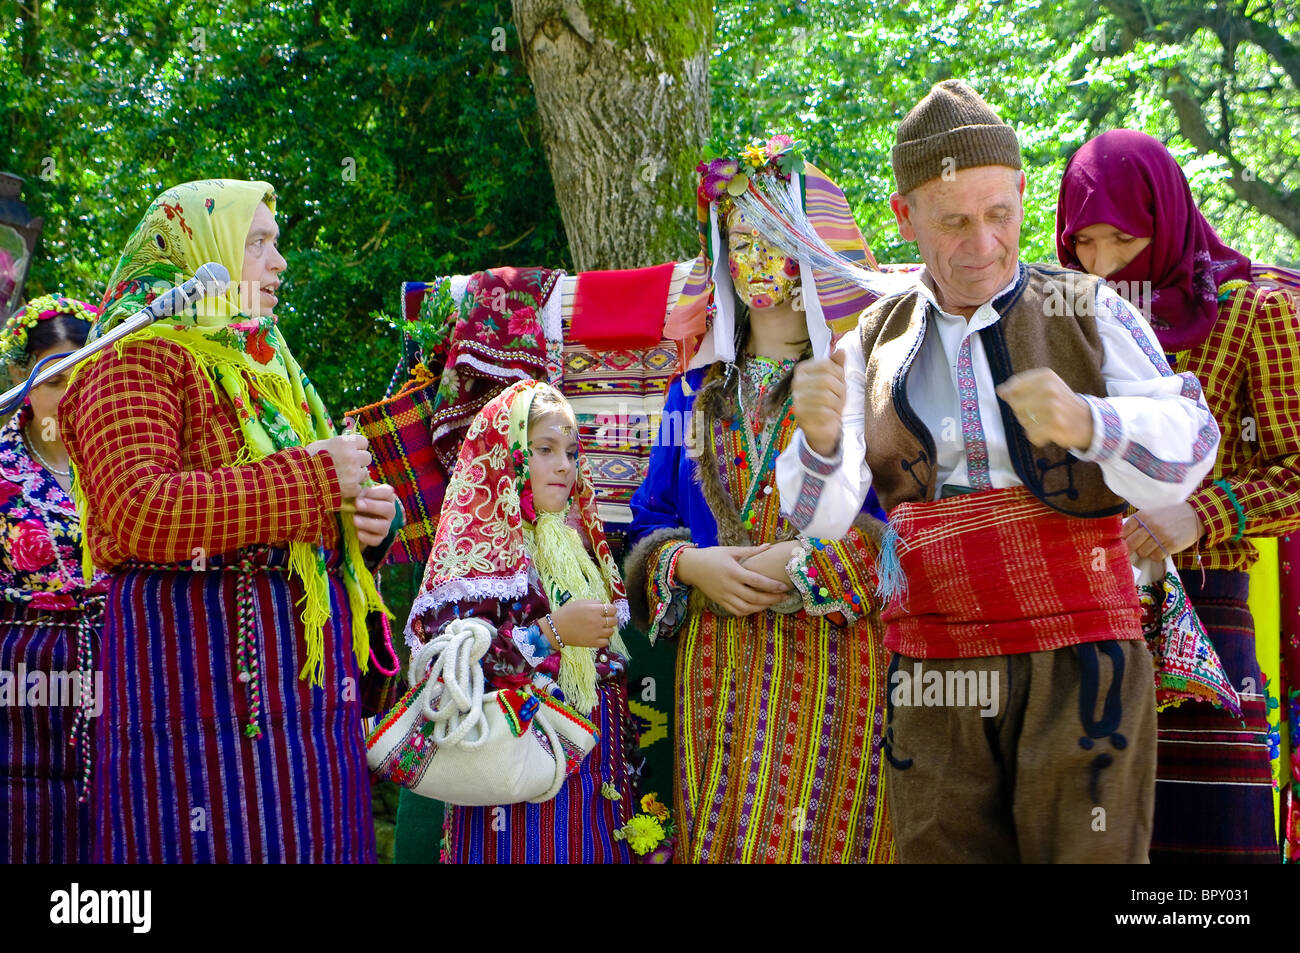 Raginovska «' dans le village de mariage Draginovo rituel traditionnel depuis le milieu du 19ème siècle parmi les musulmans. Banque D'Images